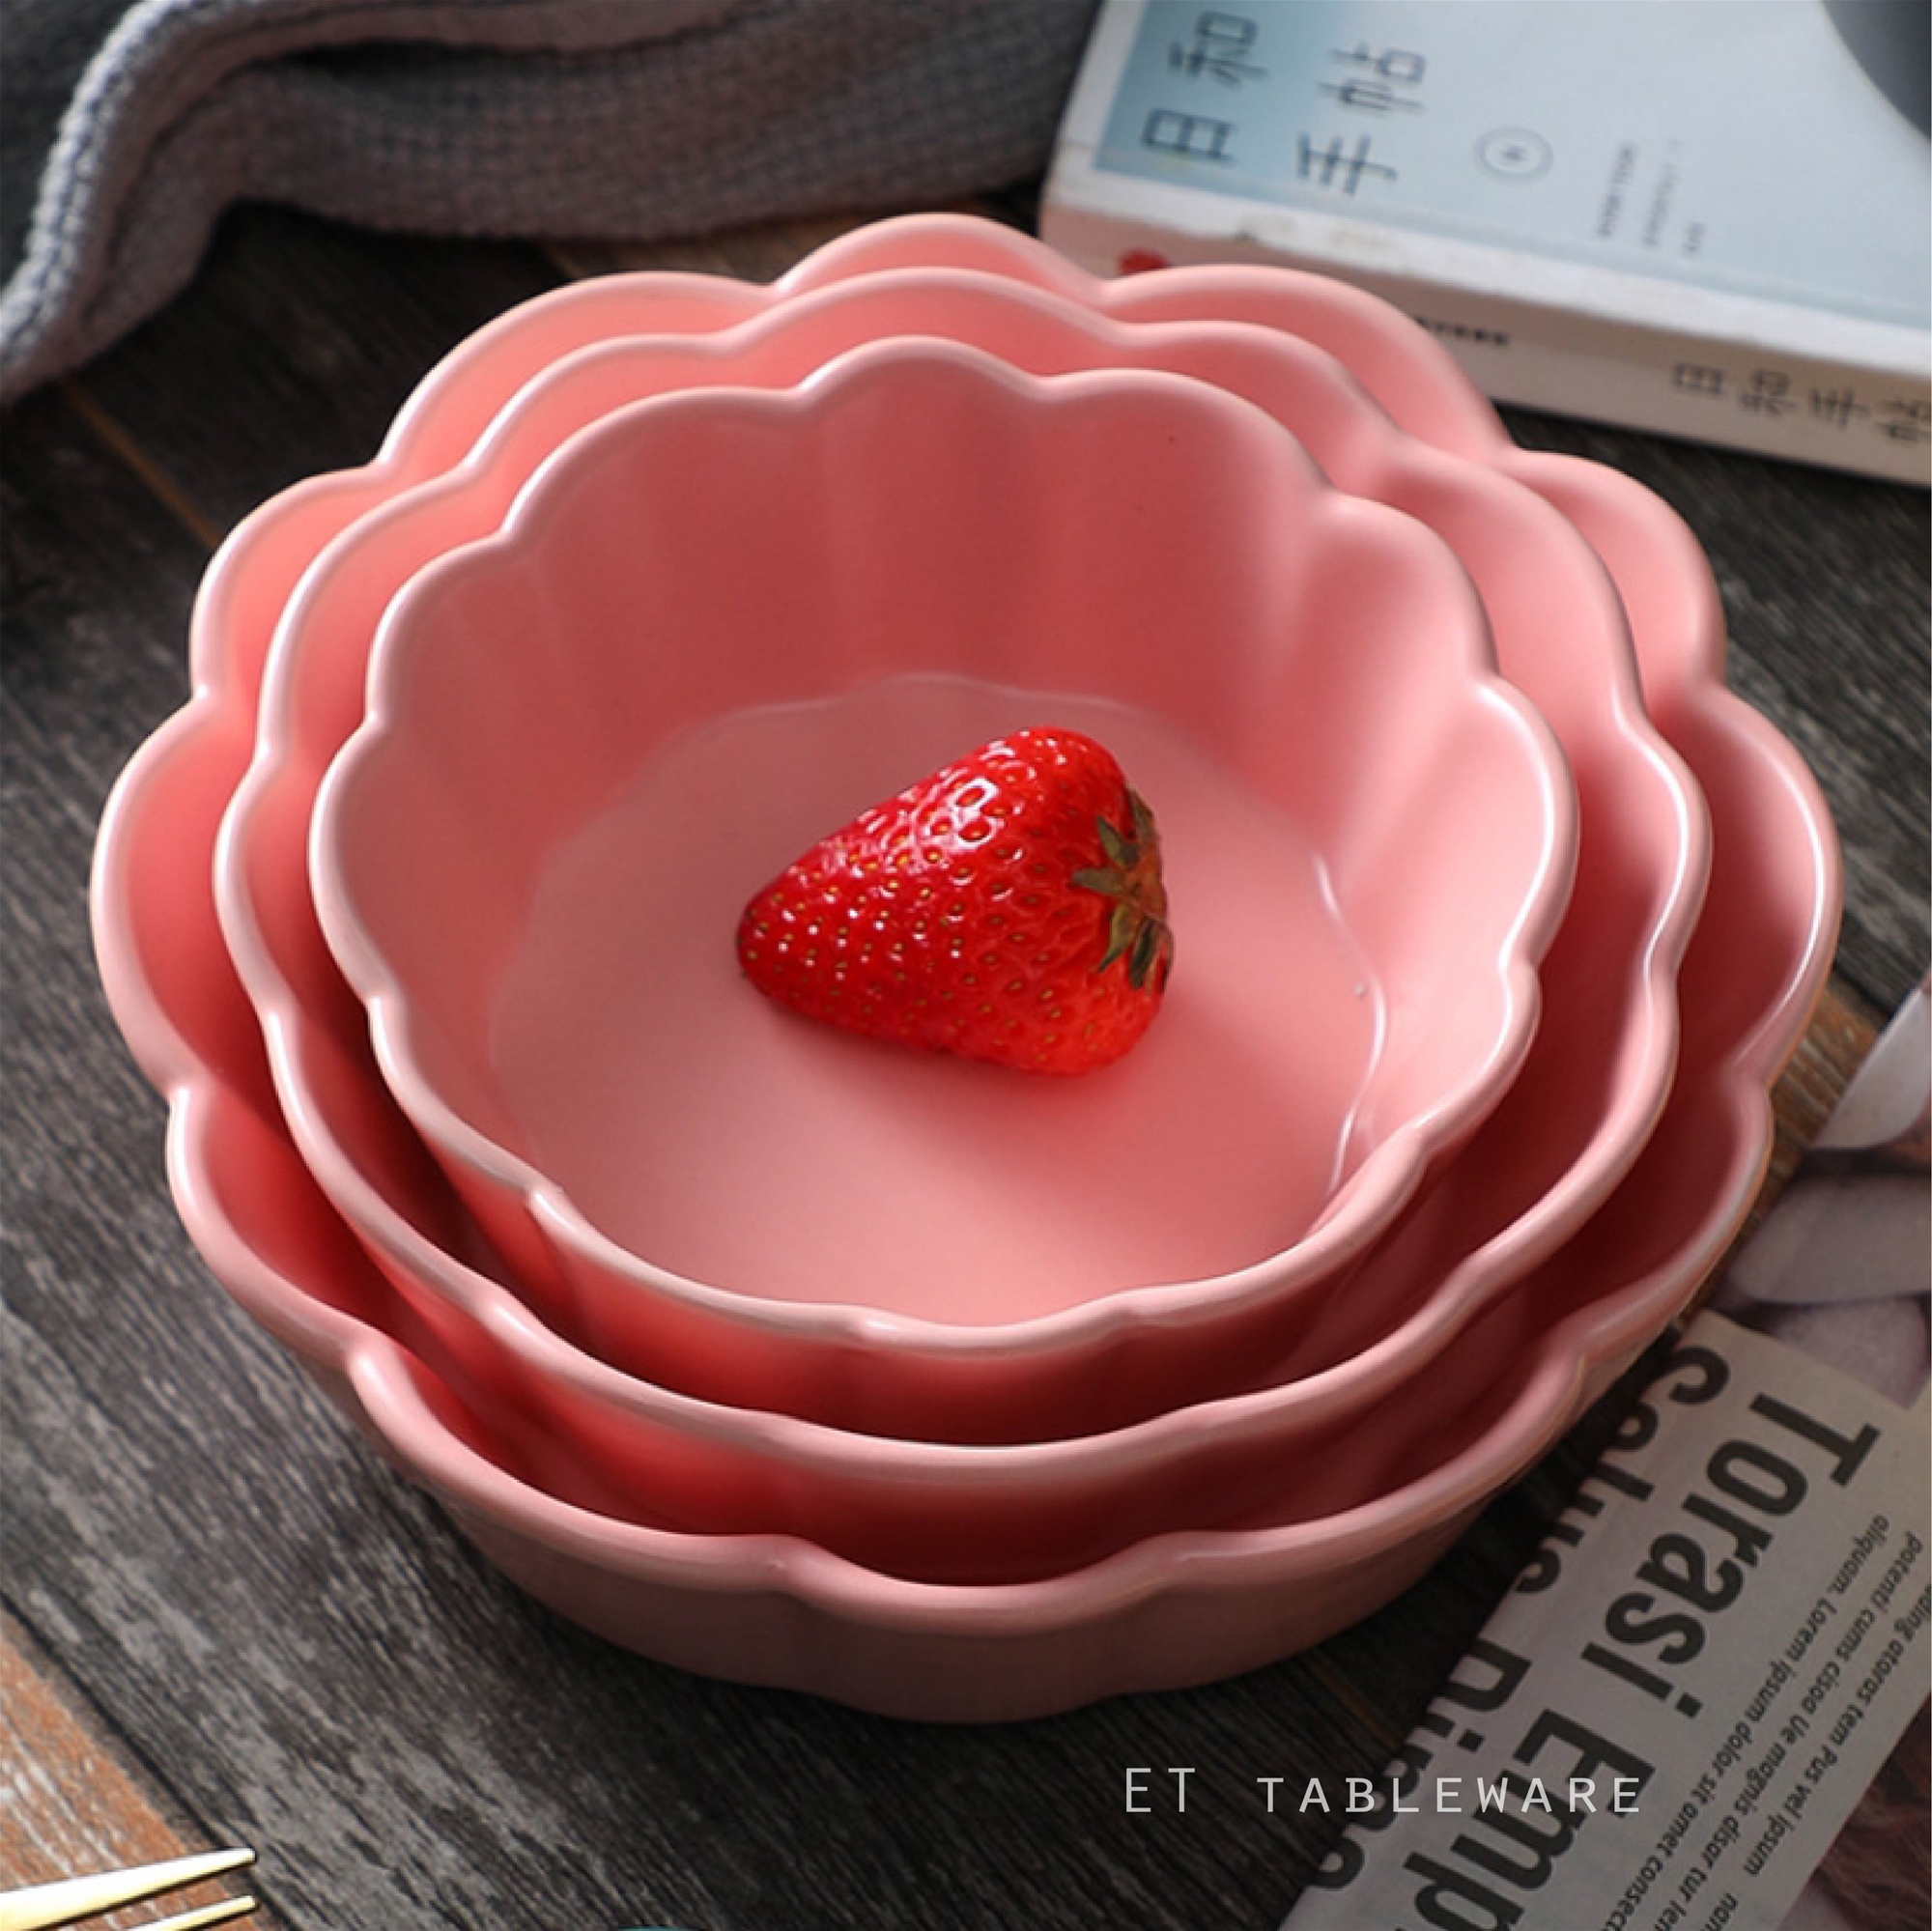 法式 色釉簡約 Φ20.5cm 花型陶瓷碗｜櫻花粉｜單個